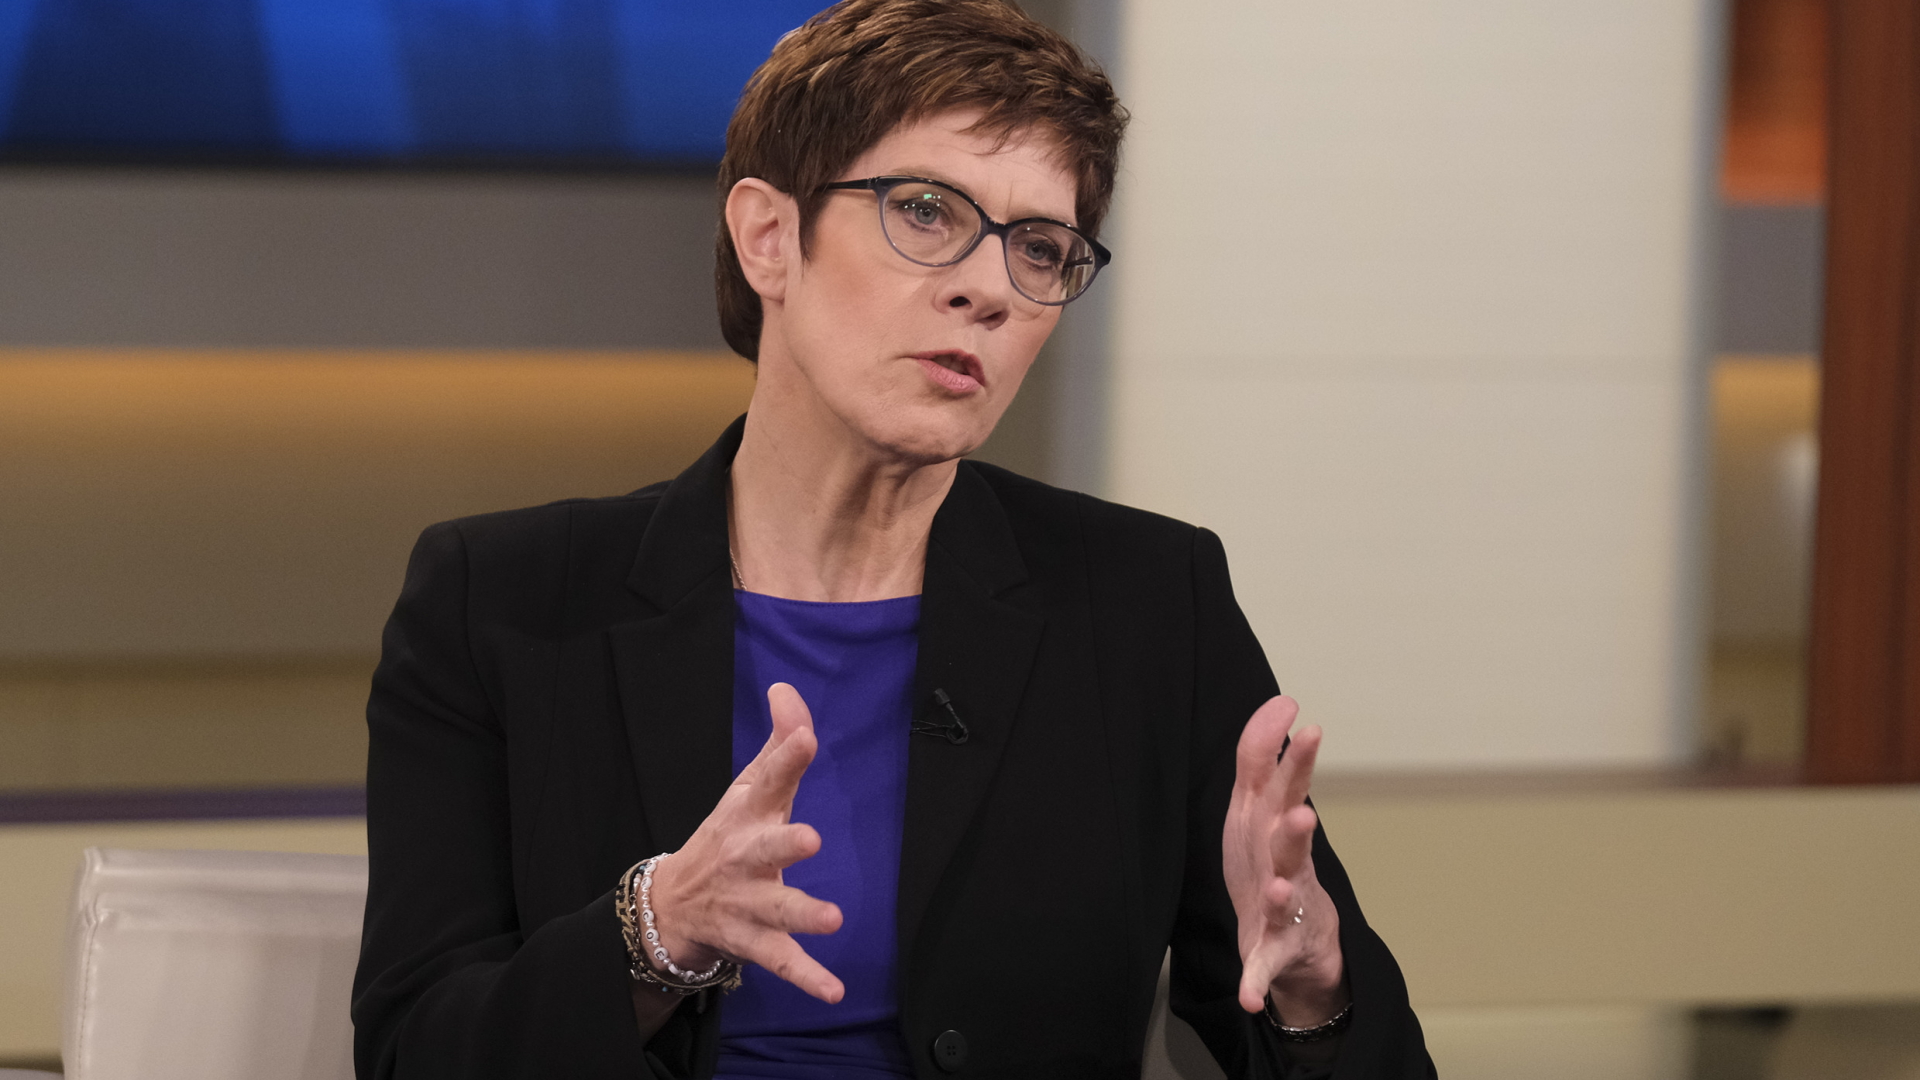 Die CDU-Parteichefin Annegret Kramp-Karrenbauer in der Sendung Anne Will. | Bildquelle: dpa